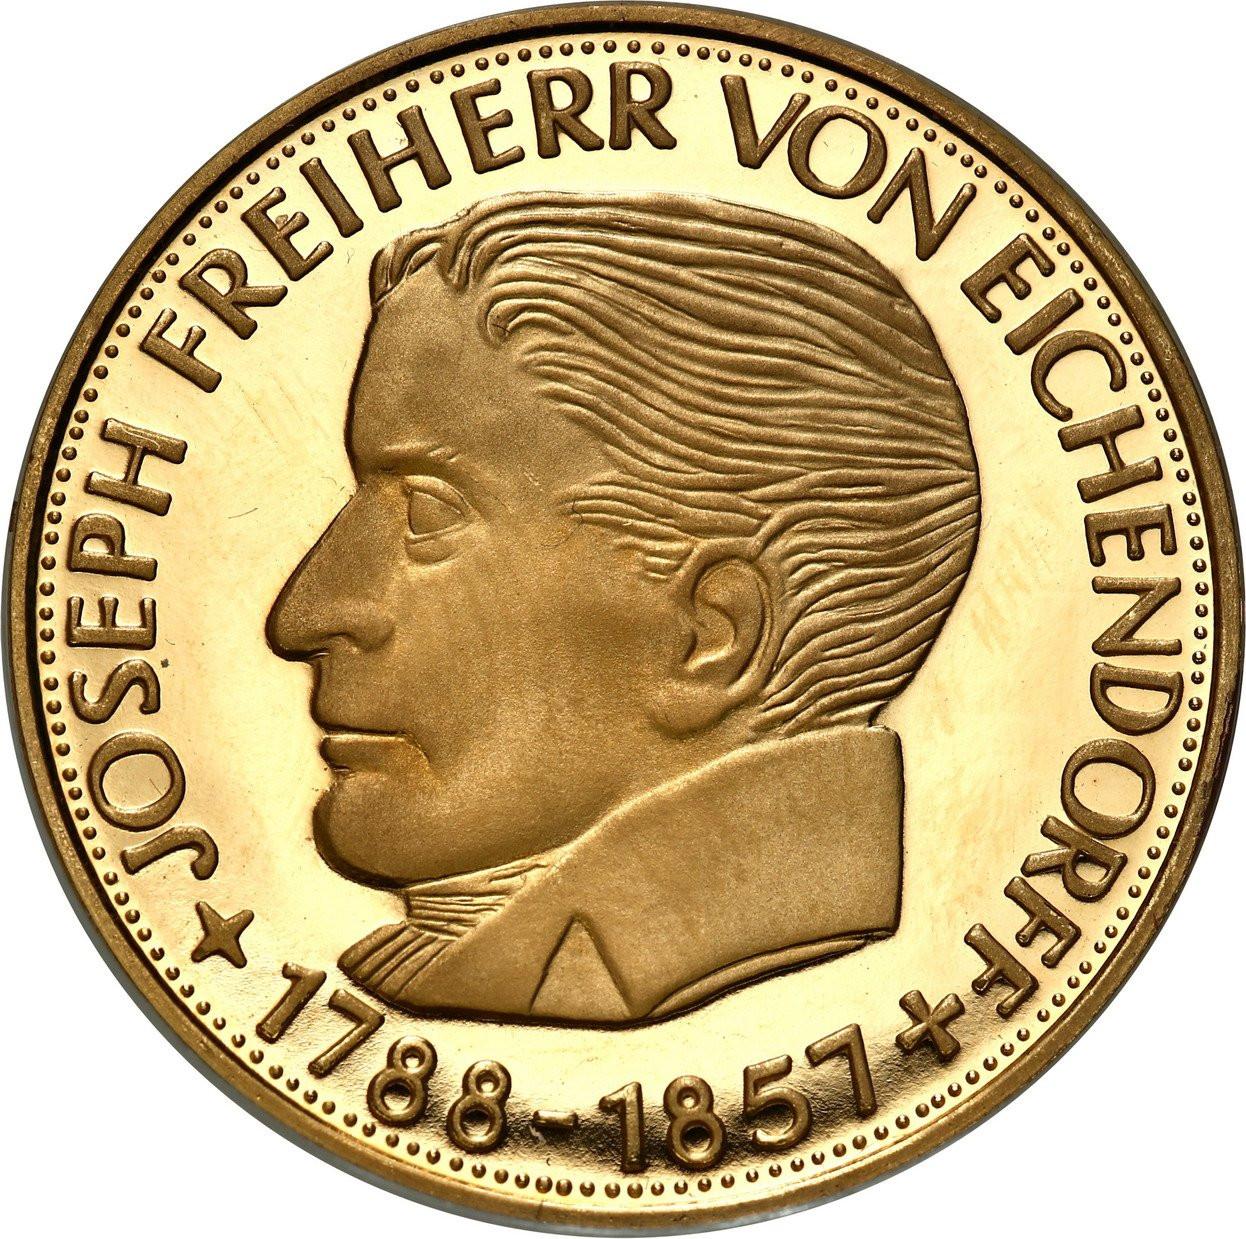 Niemcy. 5 marek 2003 Joseph Freiherr von Eichendorff - ZŁOTO